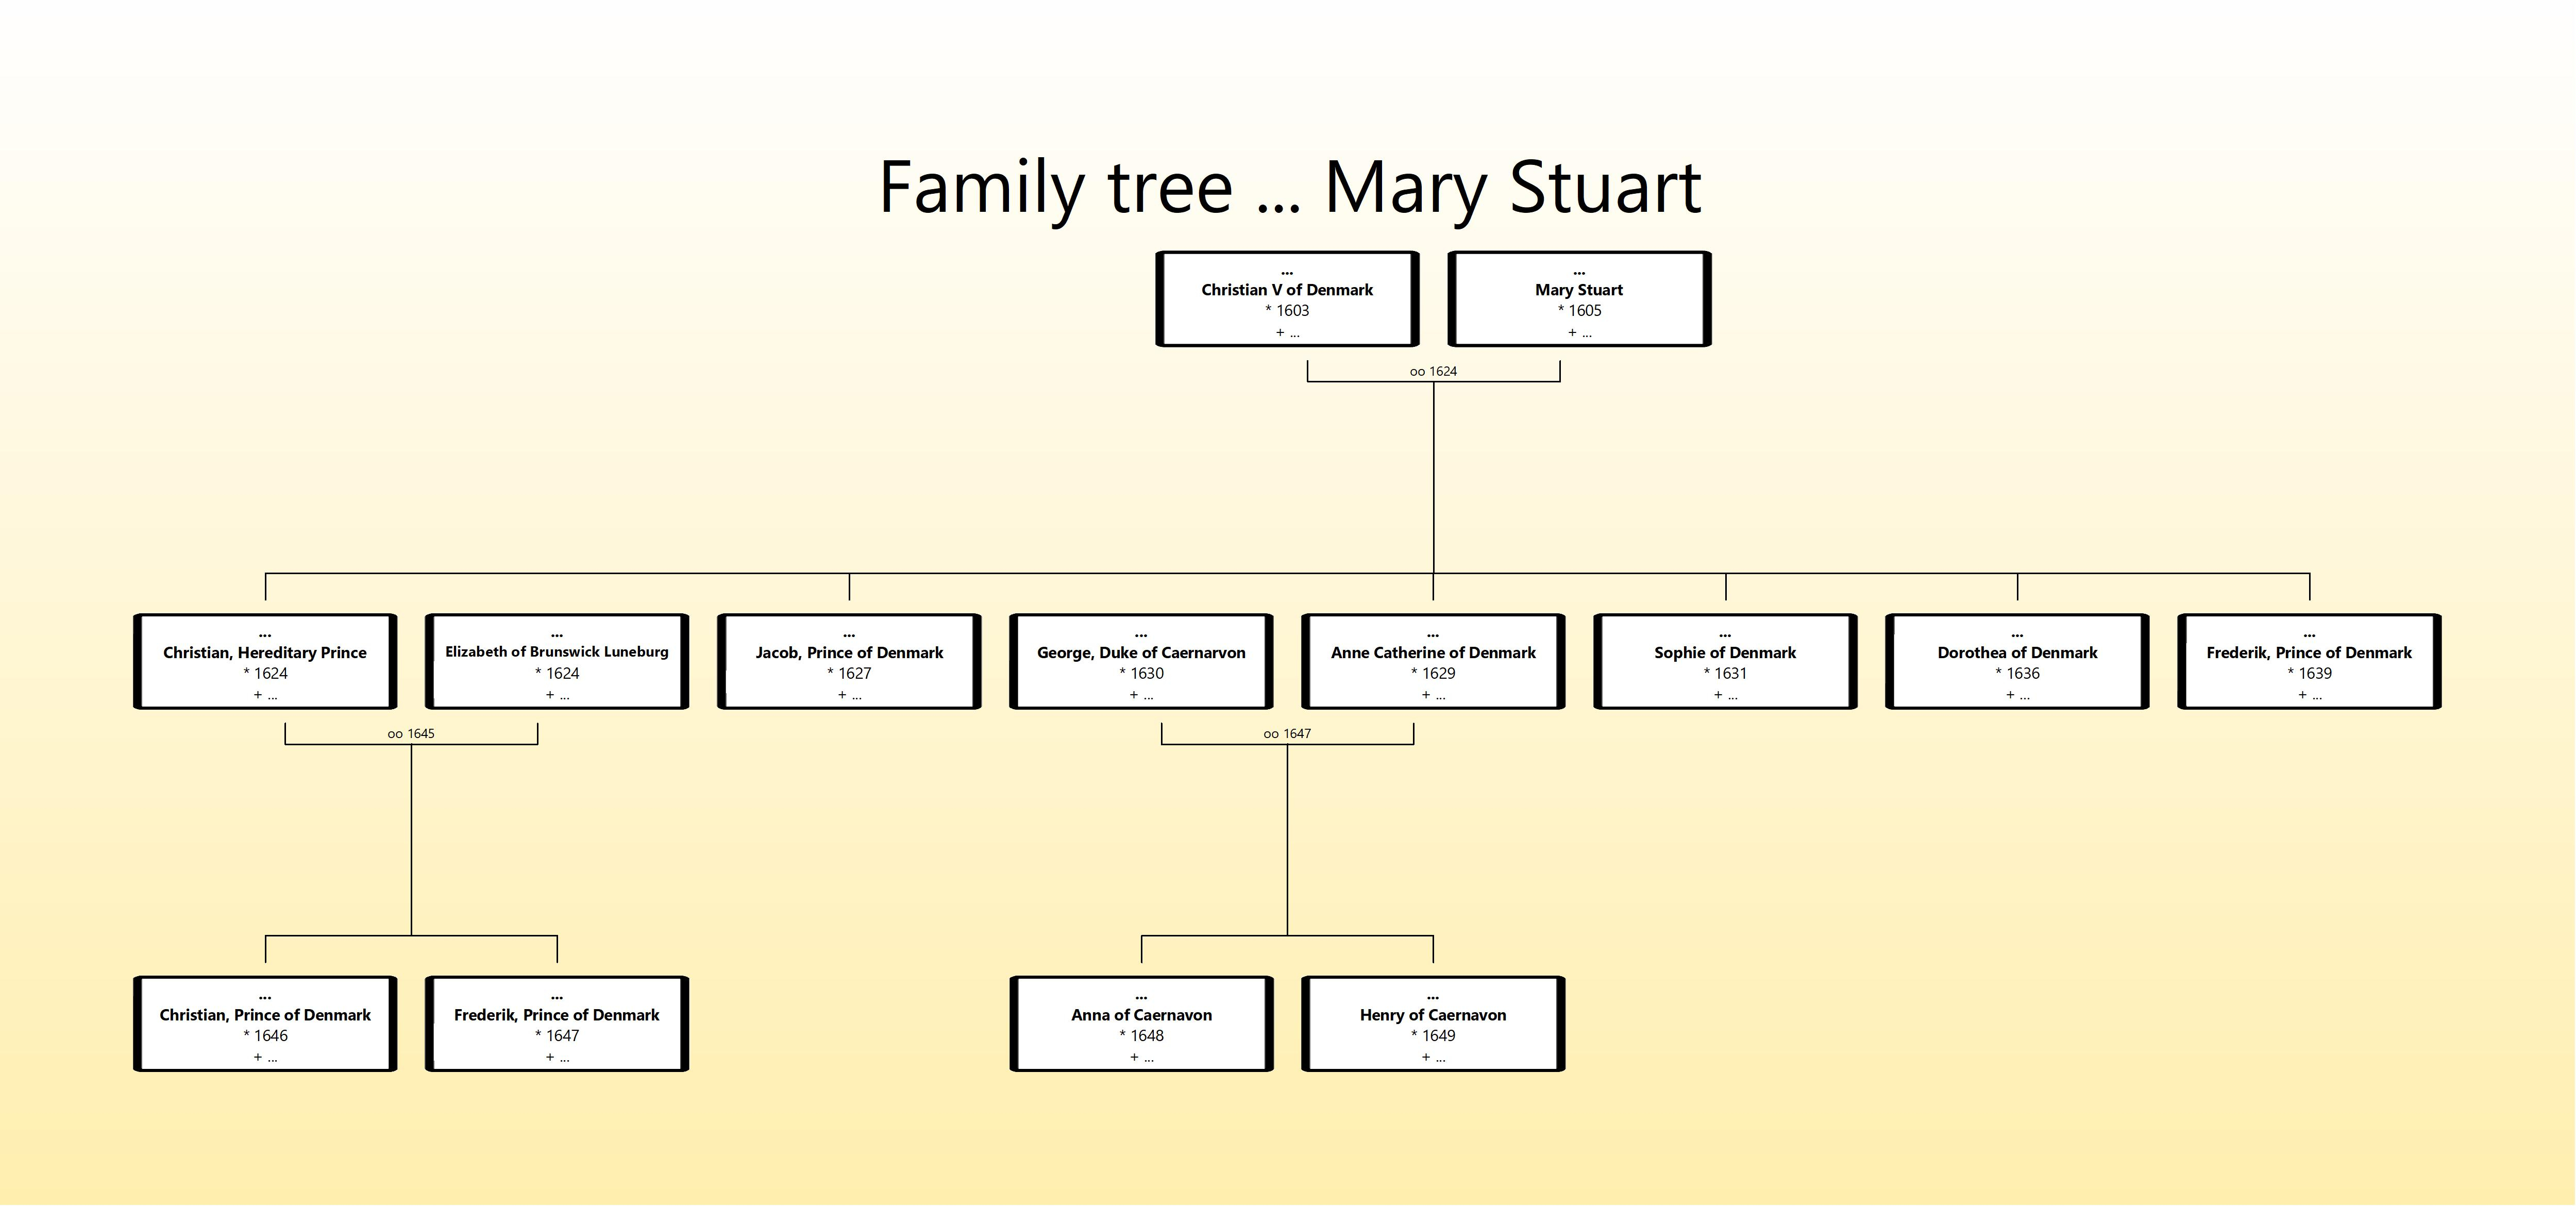 Mary Stuart family tree.jpg